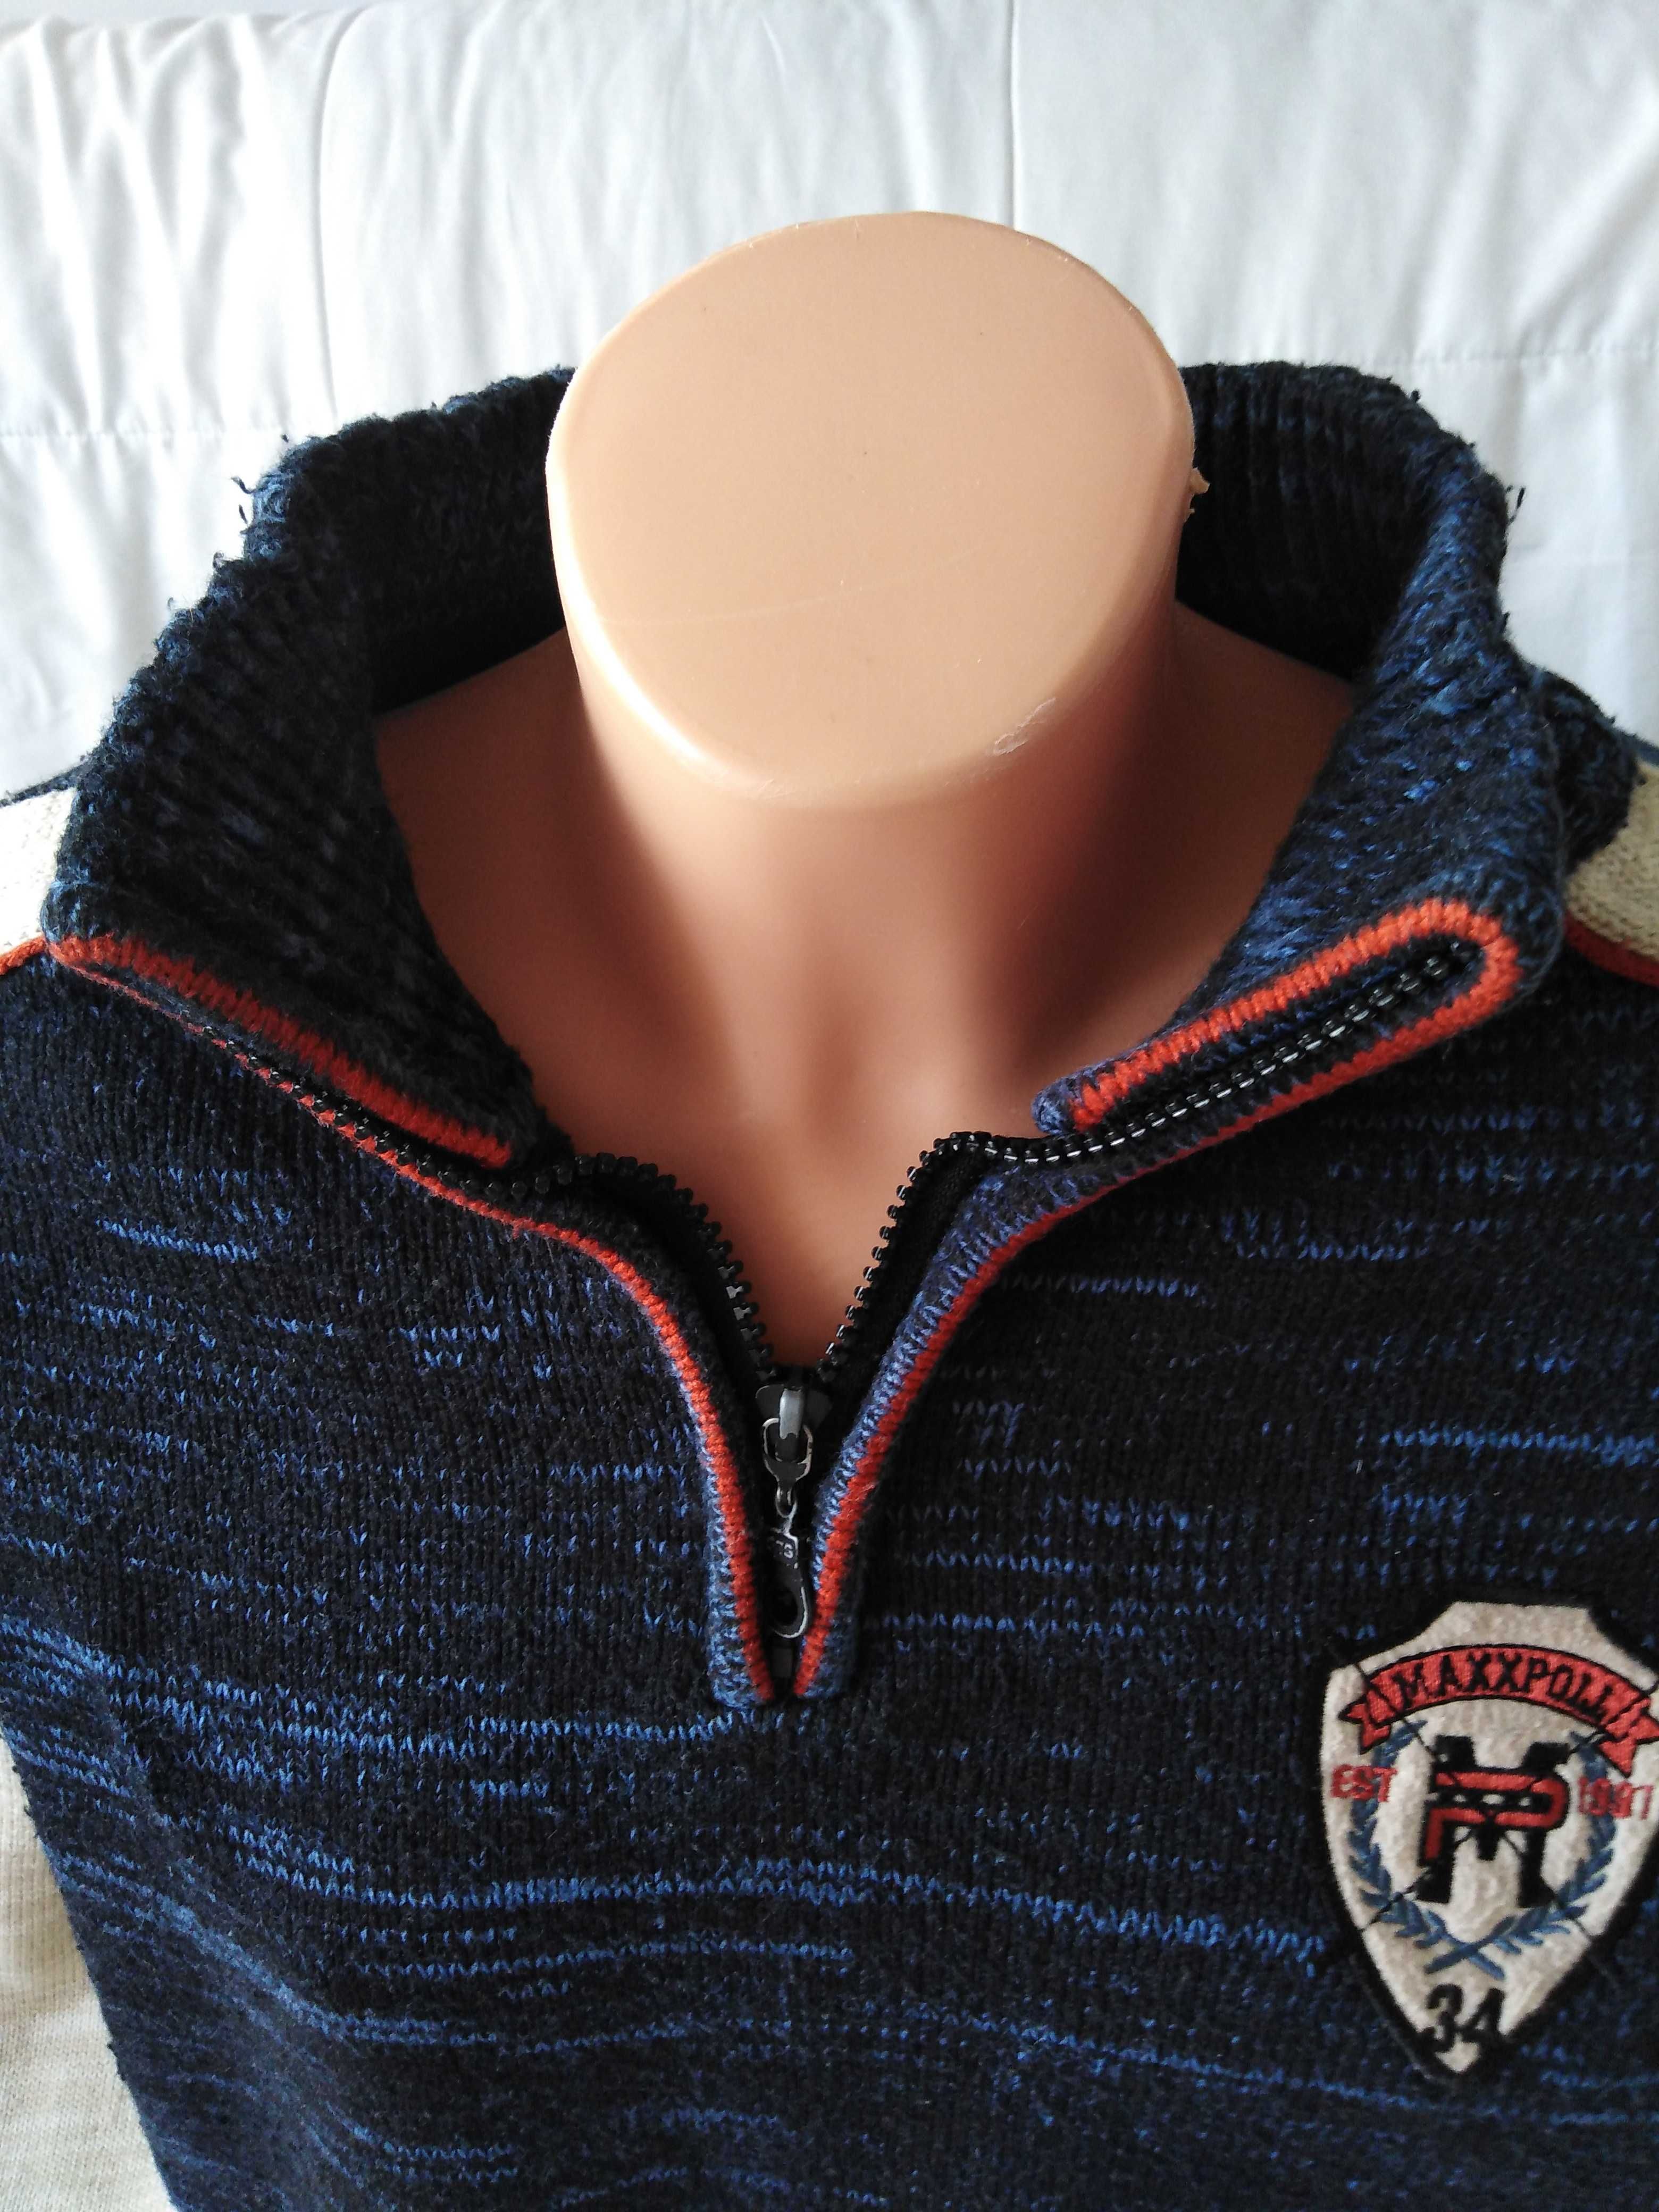 Bawełniany sweter " MaxxPoll " roz. L/XL